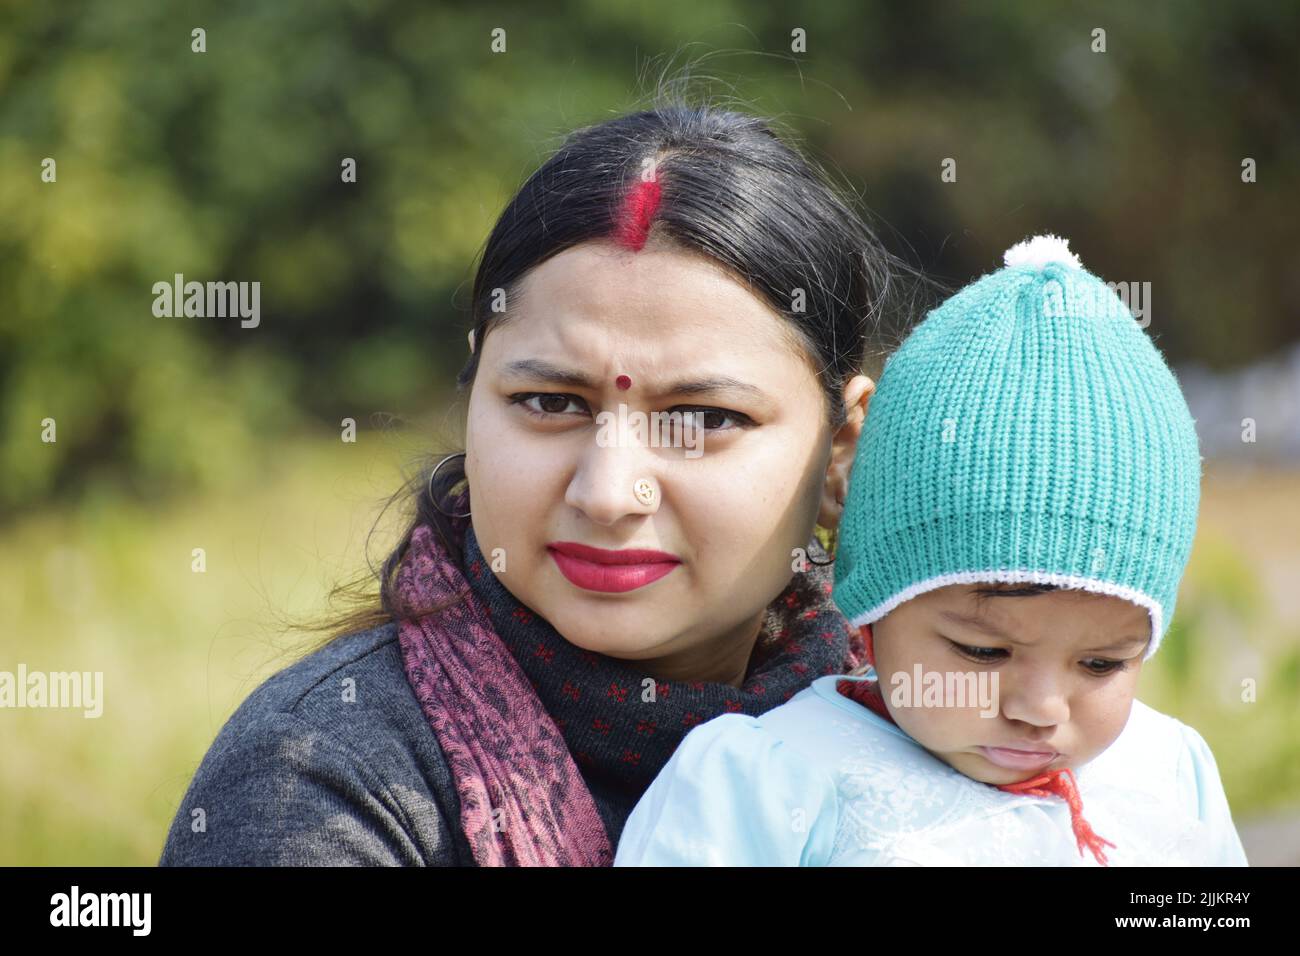 Photo d'une femme d'Asie du Sud-est avec un bindi et un perçage du nez tenant un bébé dans un gr Banque D'Images